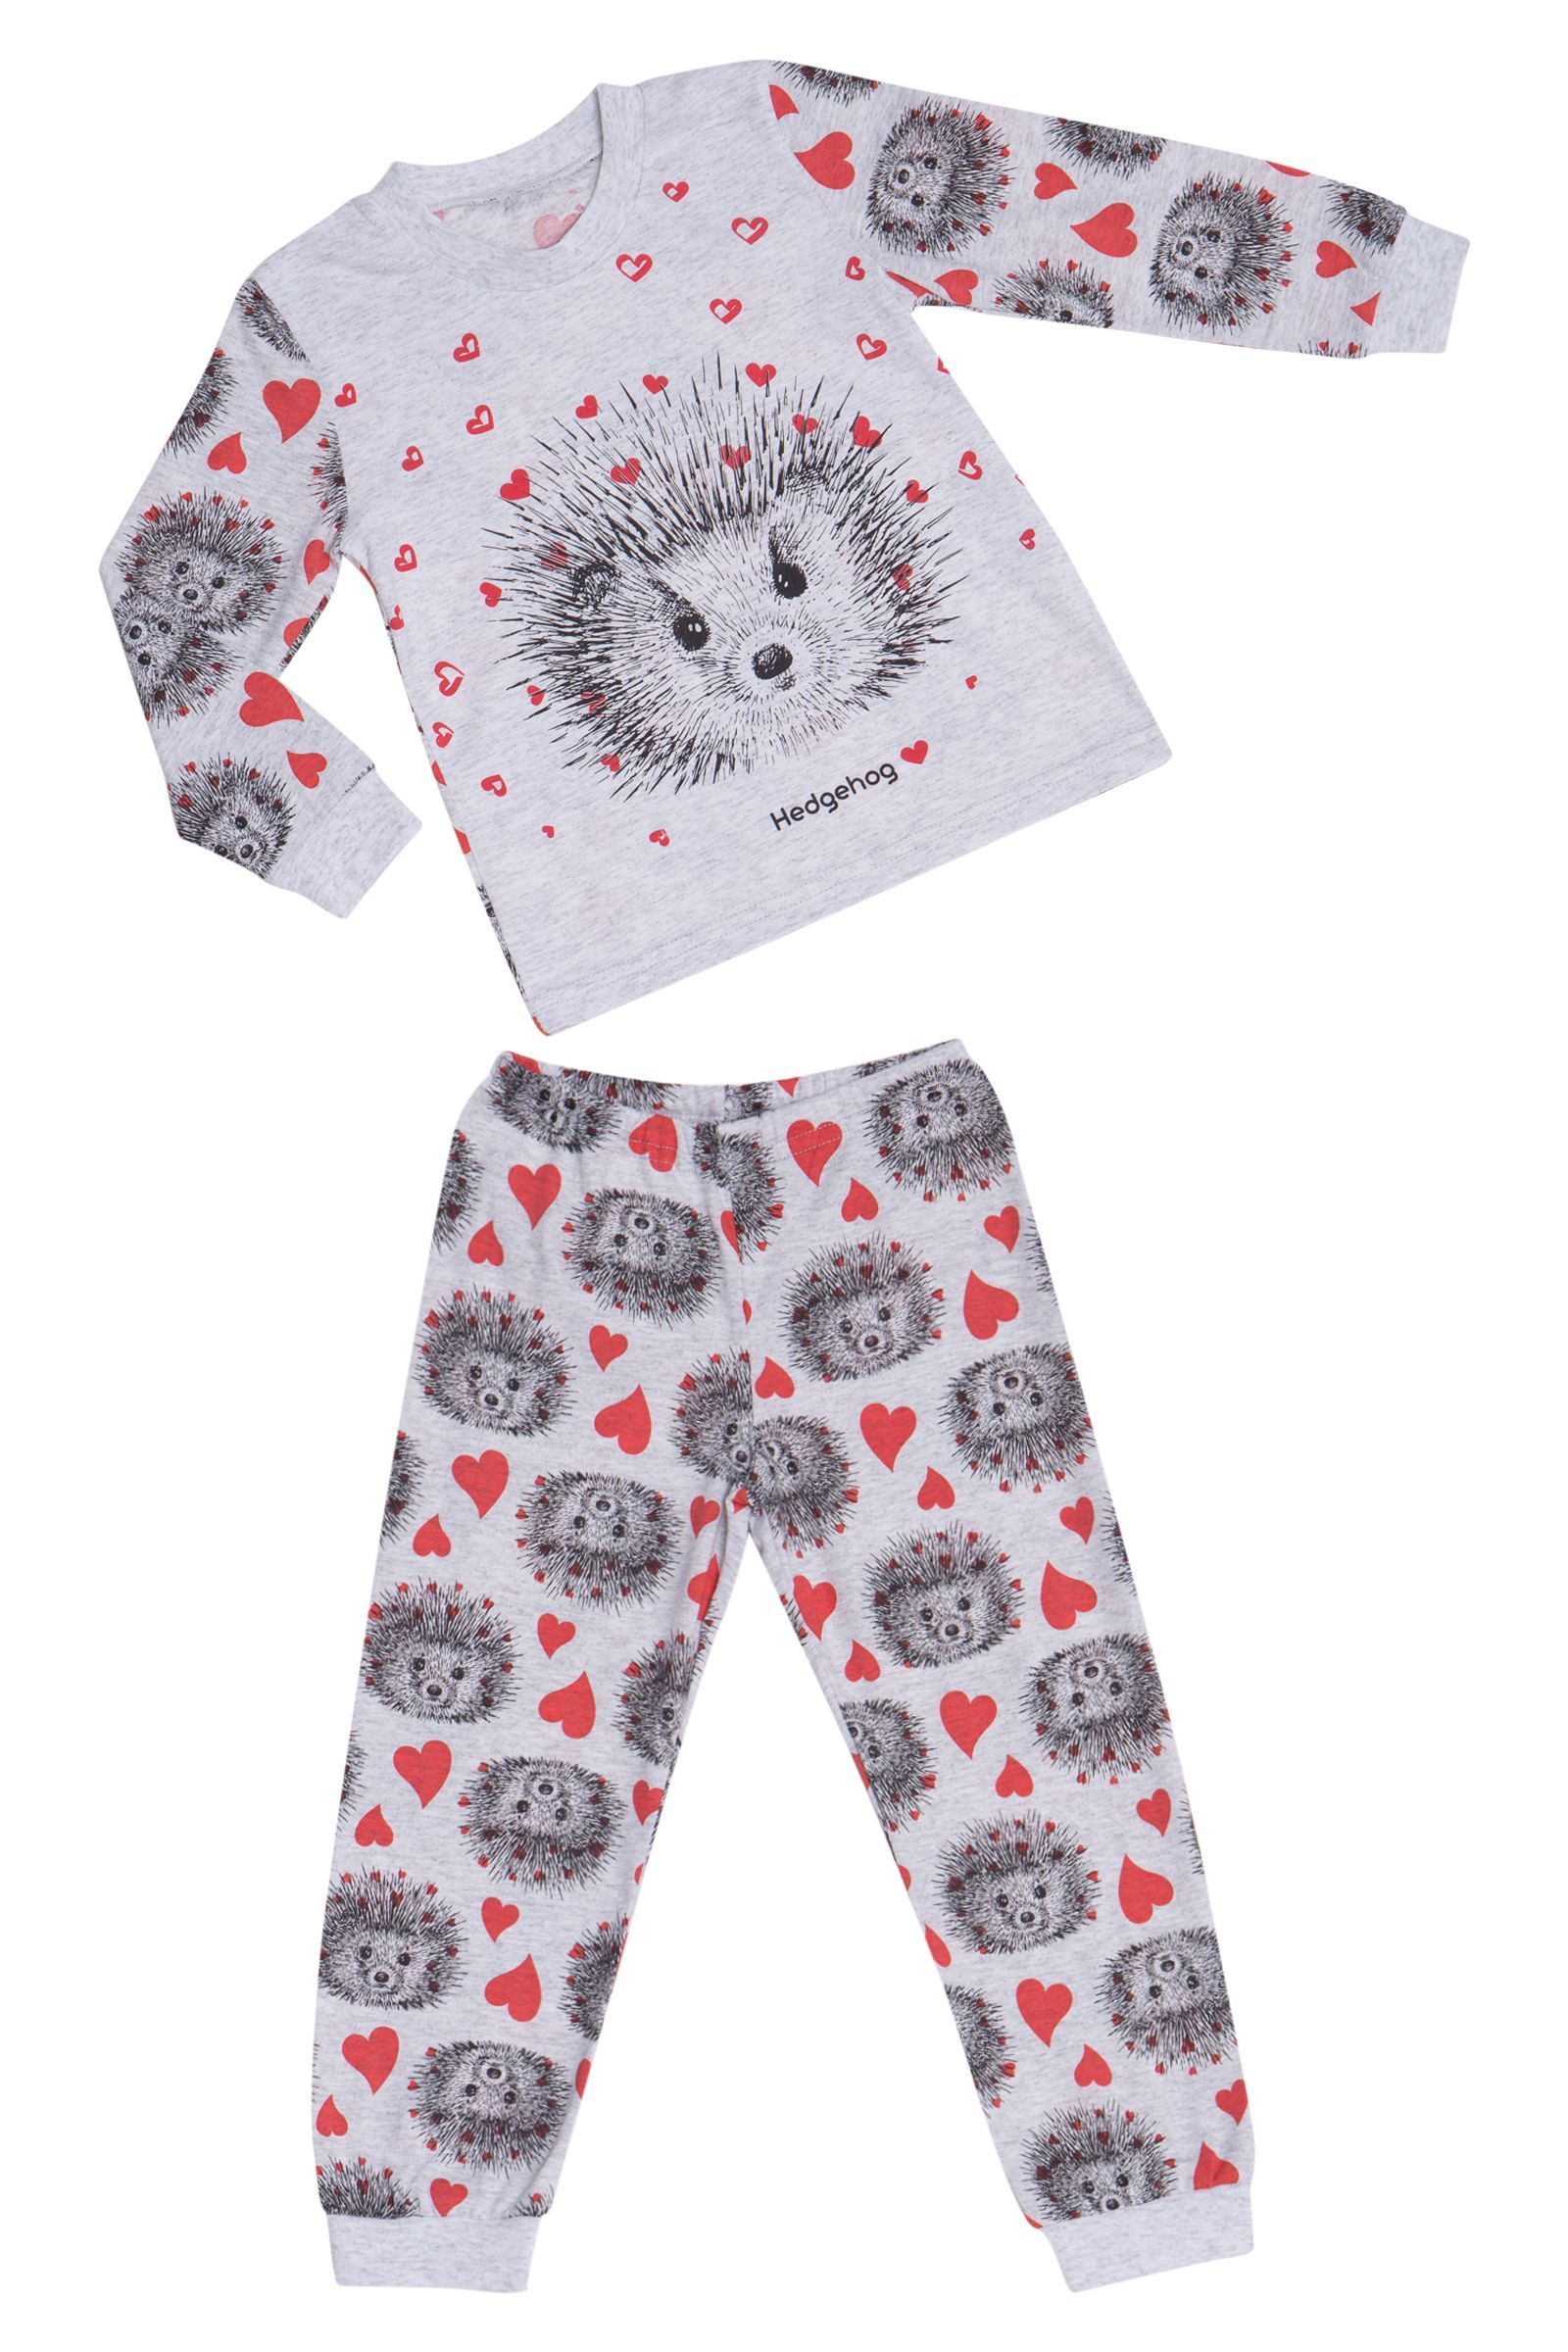 Пижама-ПЖ02-2910 оптом от производителя детской одежды 'Алёна'